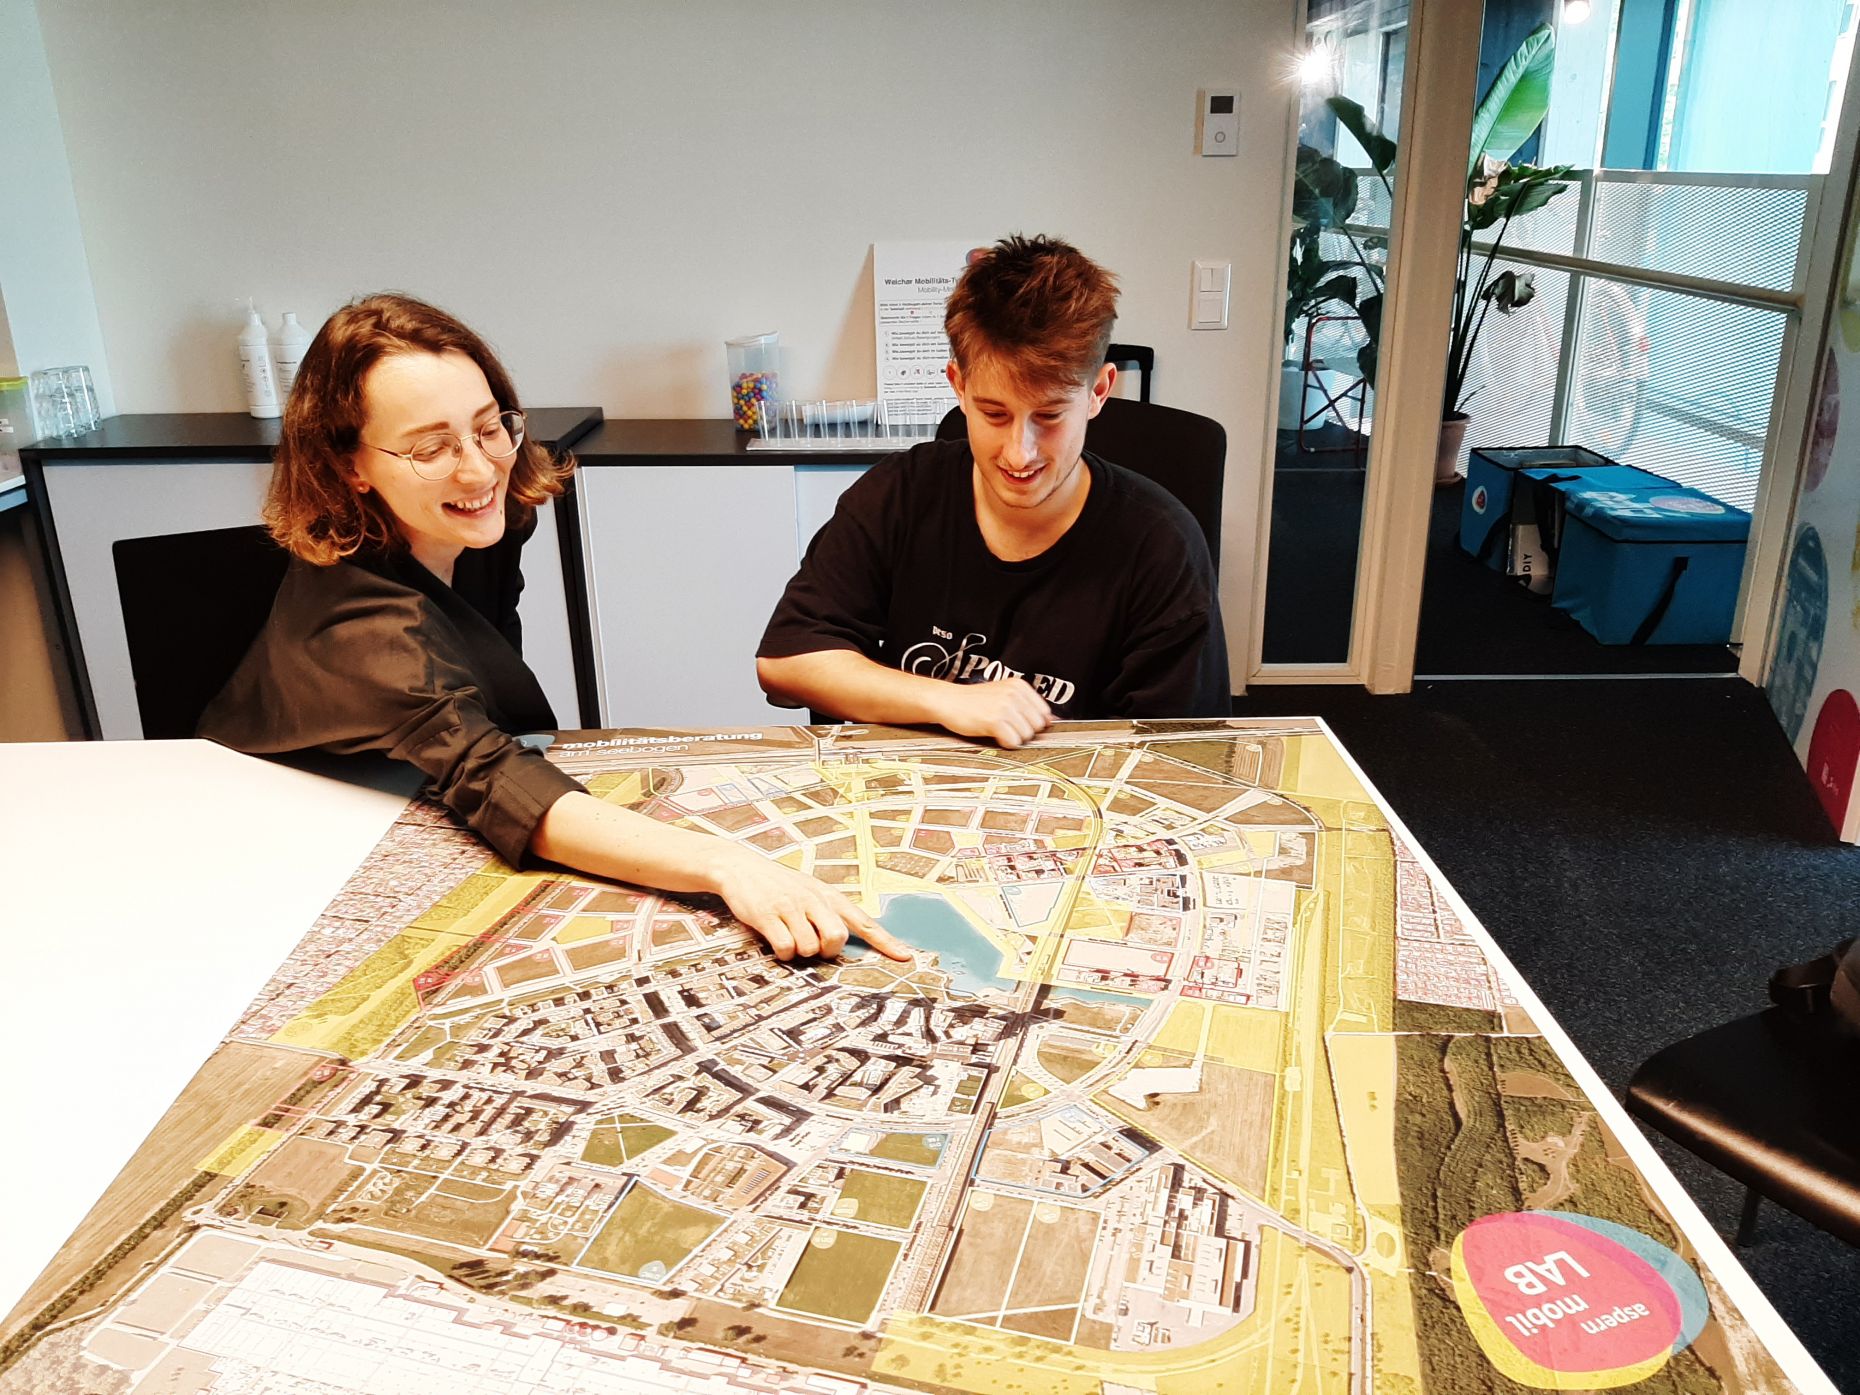 Magdalena Bürbaumer und Marco Farinelli sitzen mit einer Karte der Seestadt an einem Tisch im Büro des aspern.mobil Labs. Magdalena deutet mit dem Zeigefinger auf ein Gebiet in der Seestadt.